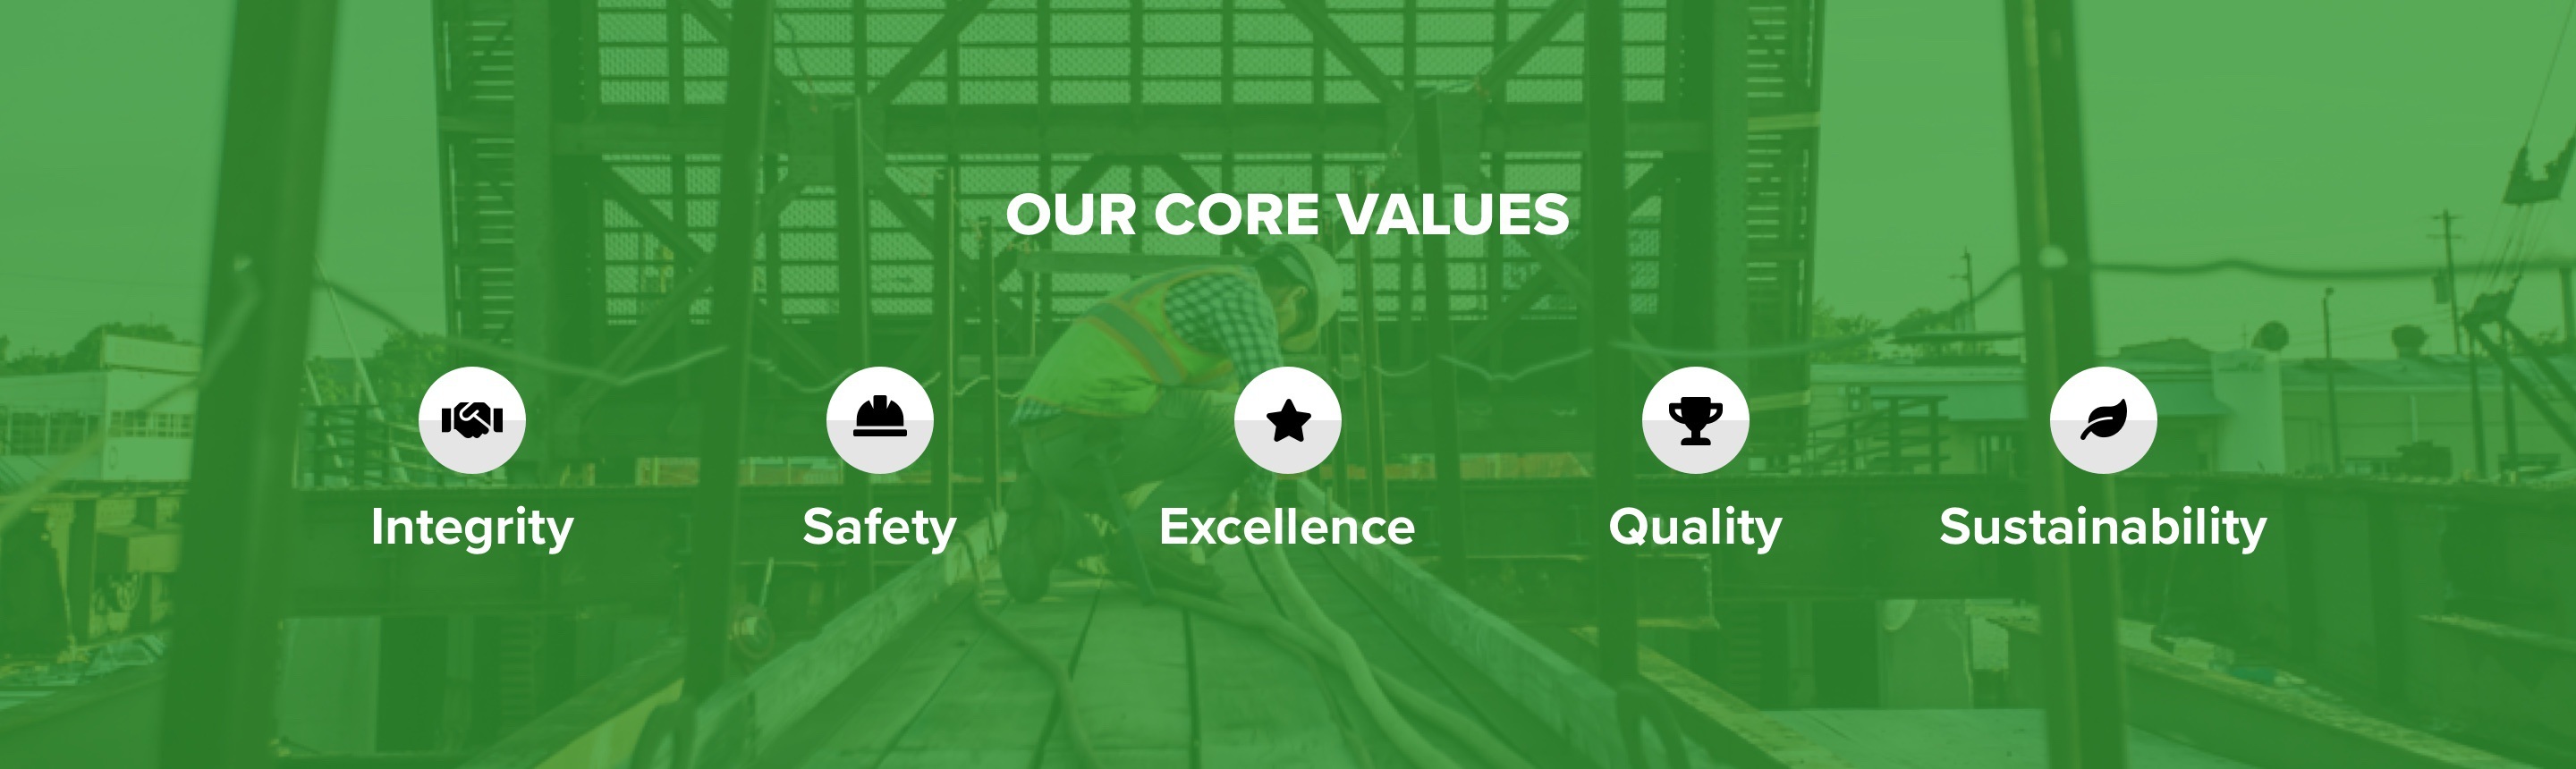 Core values graphic